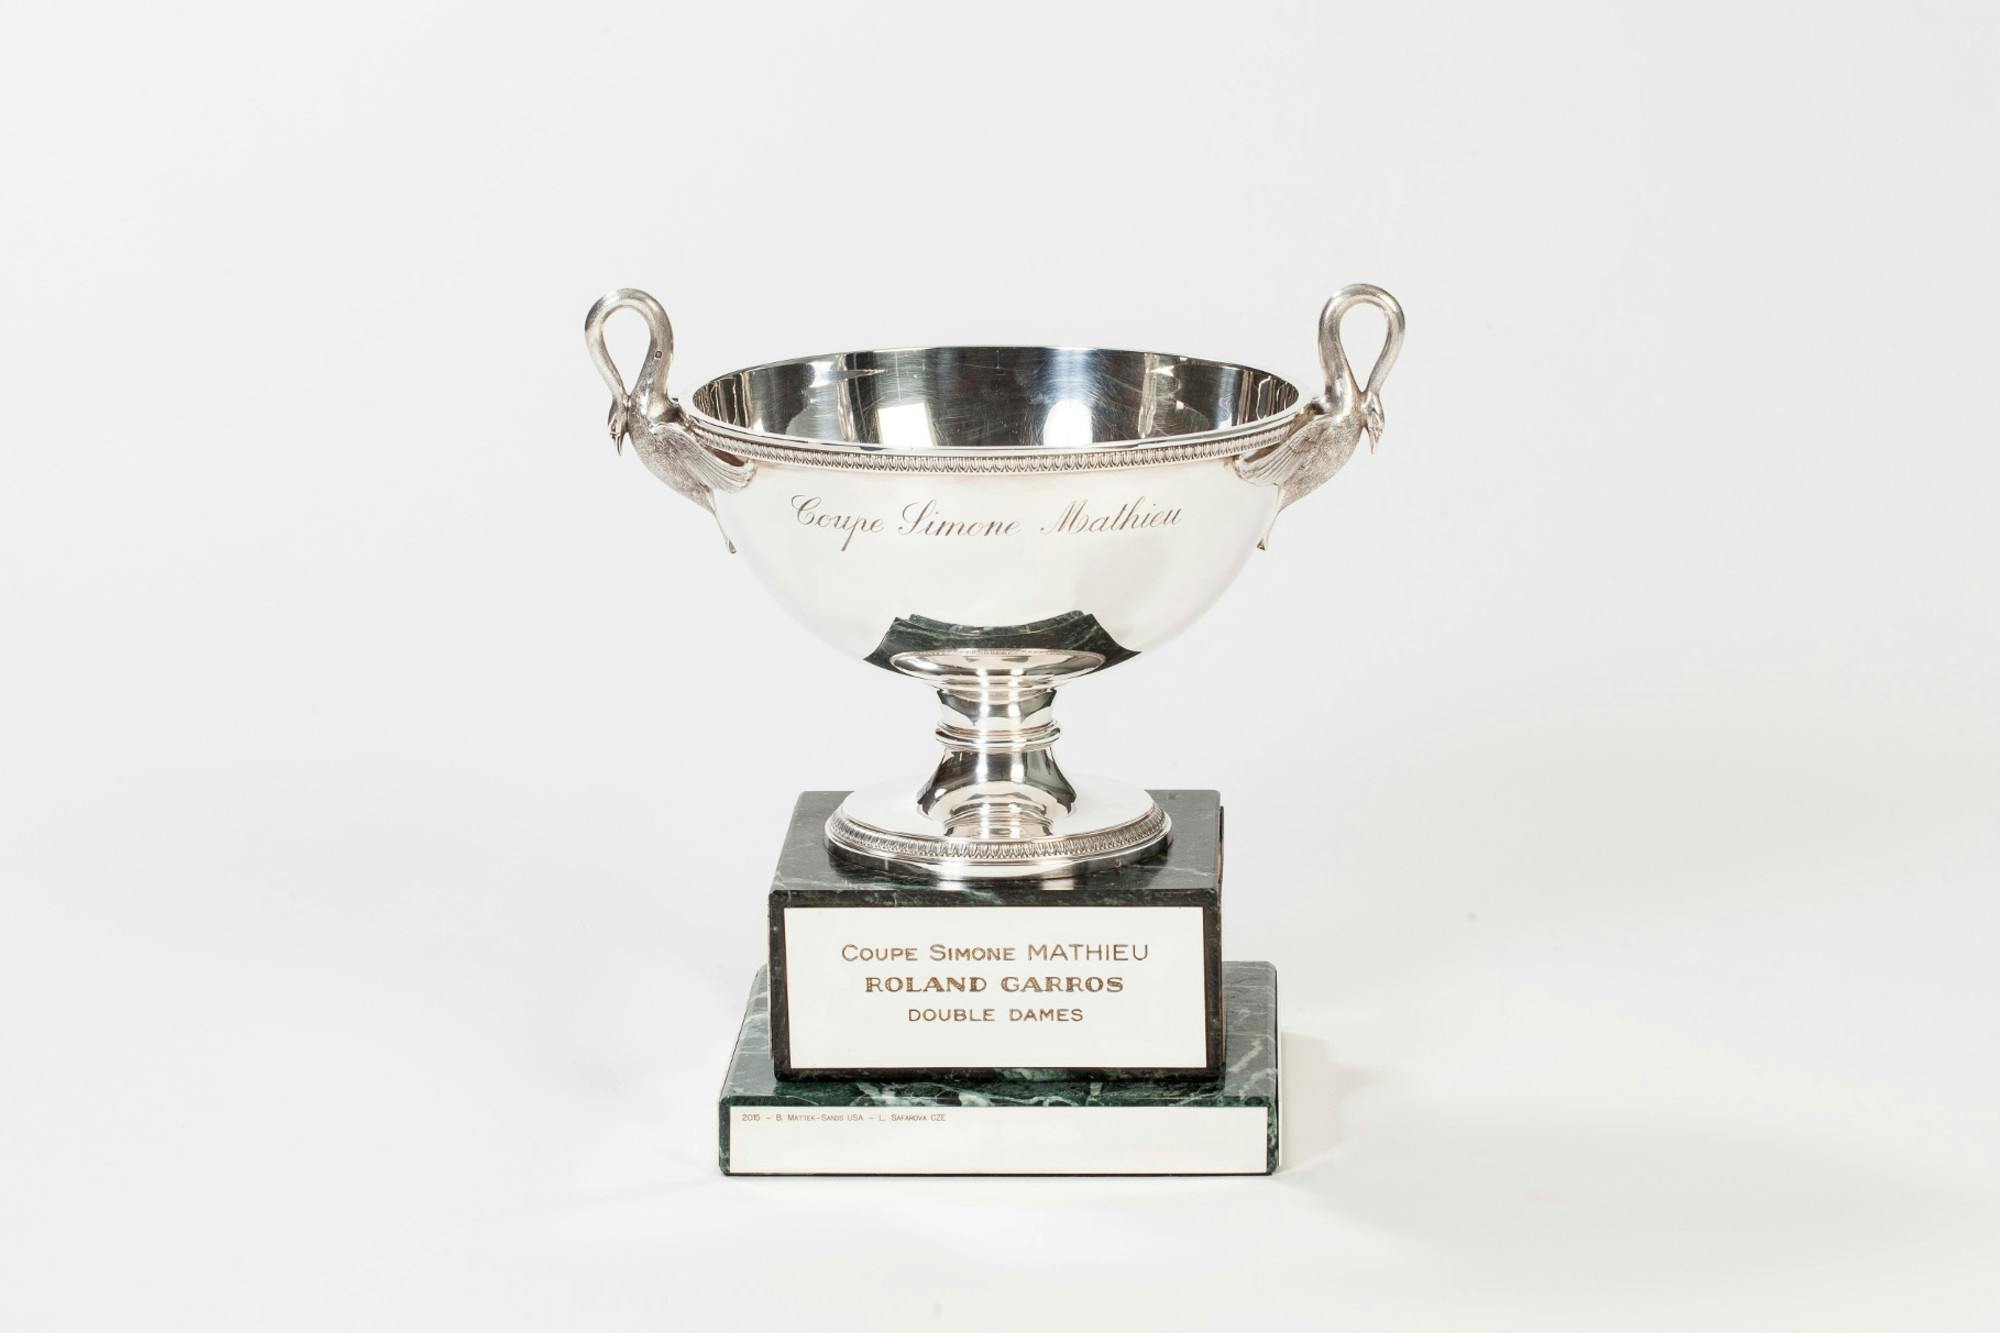 coupe Simonne-Mathieu double dames Roland-Garros trophée / Simonne Mathieu's cup women's doubles Roland-Garros trophy.